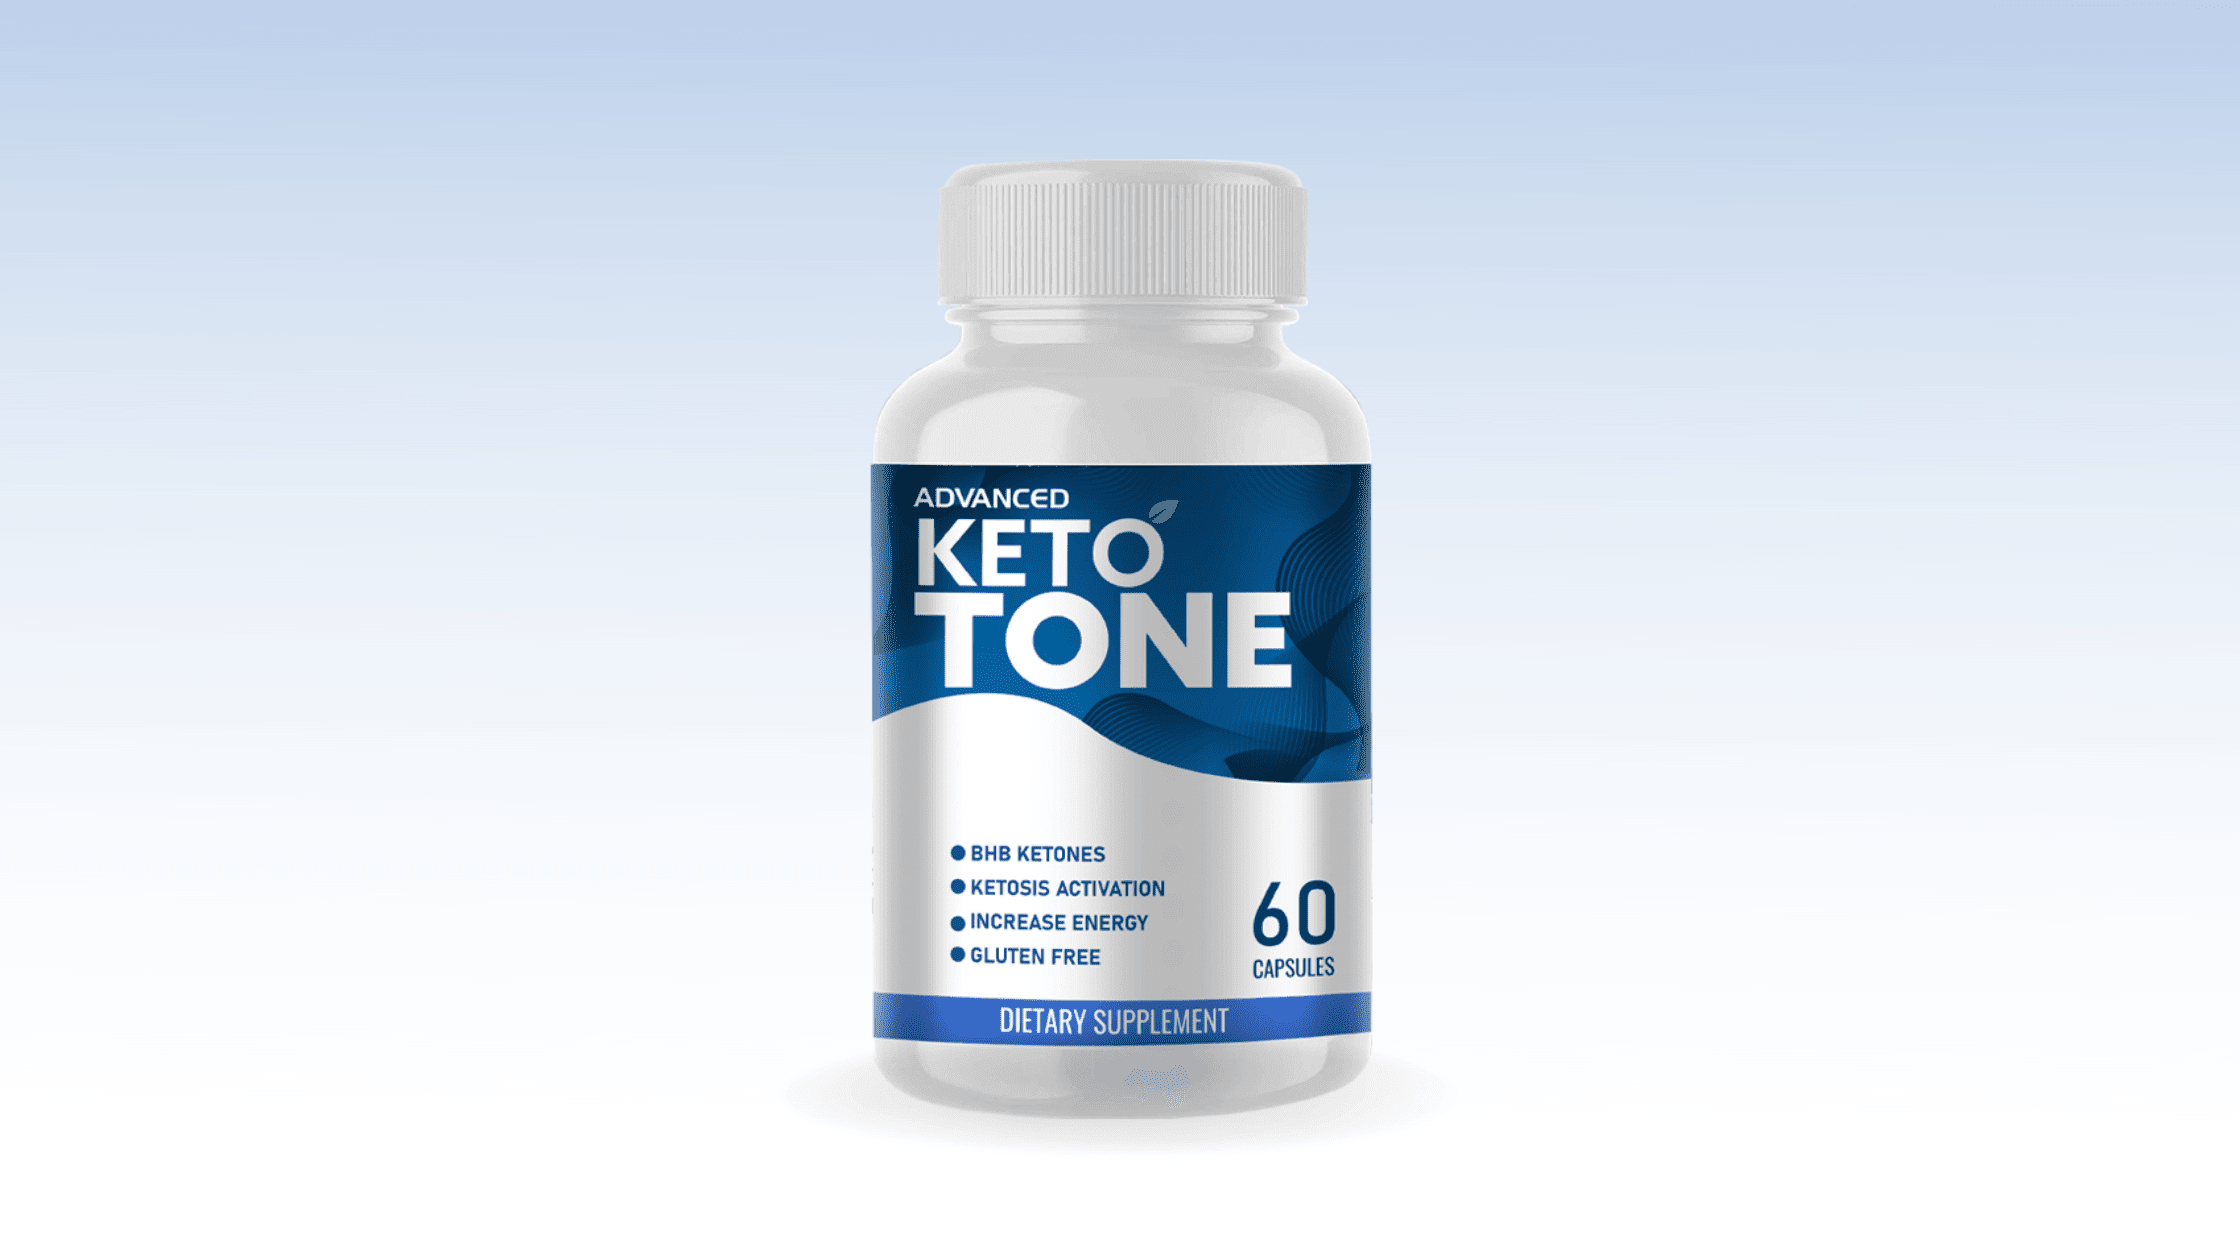 Advanced Keto Tone Reviews